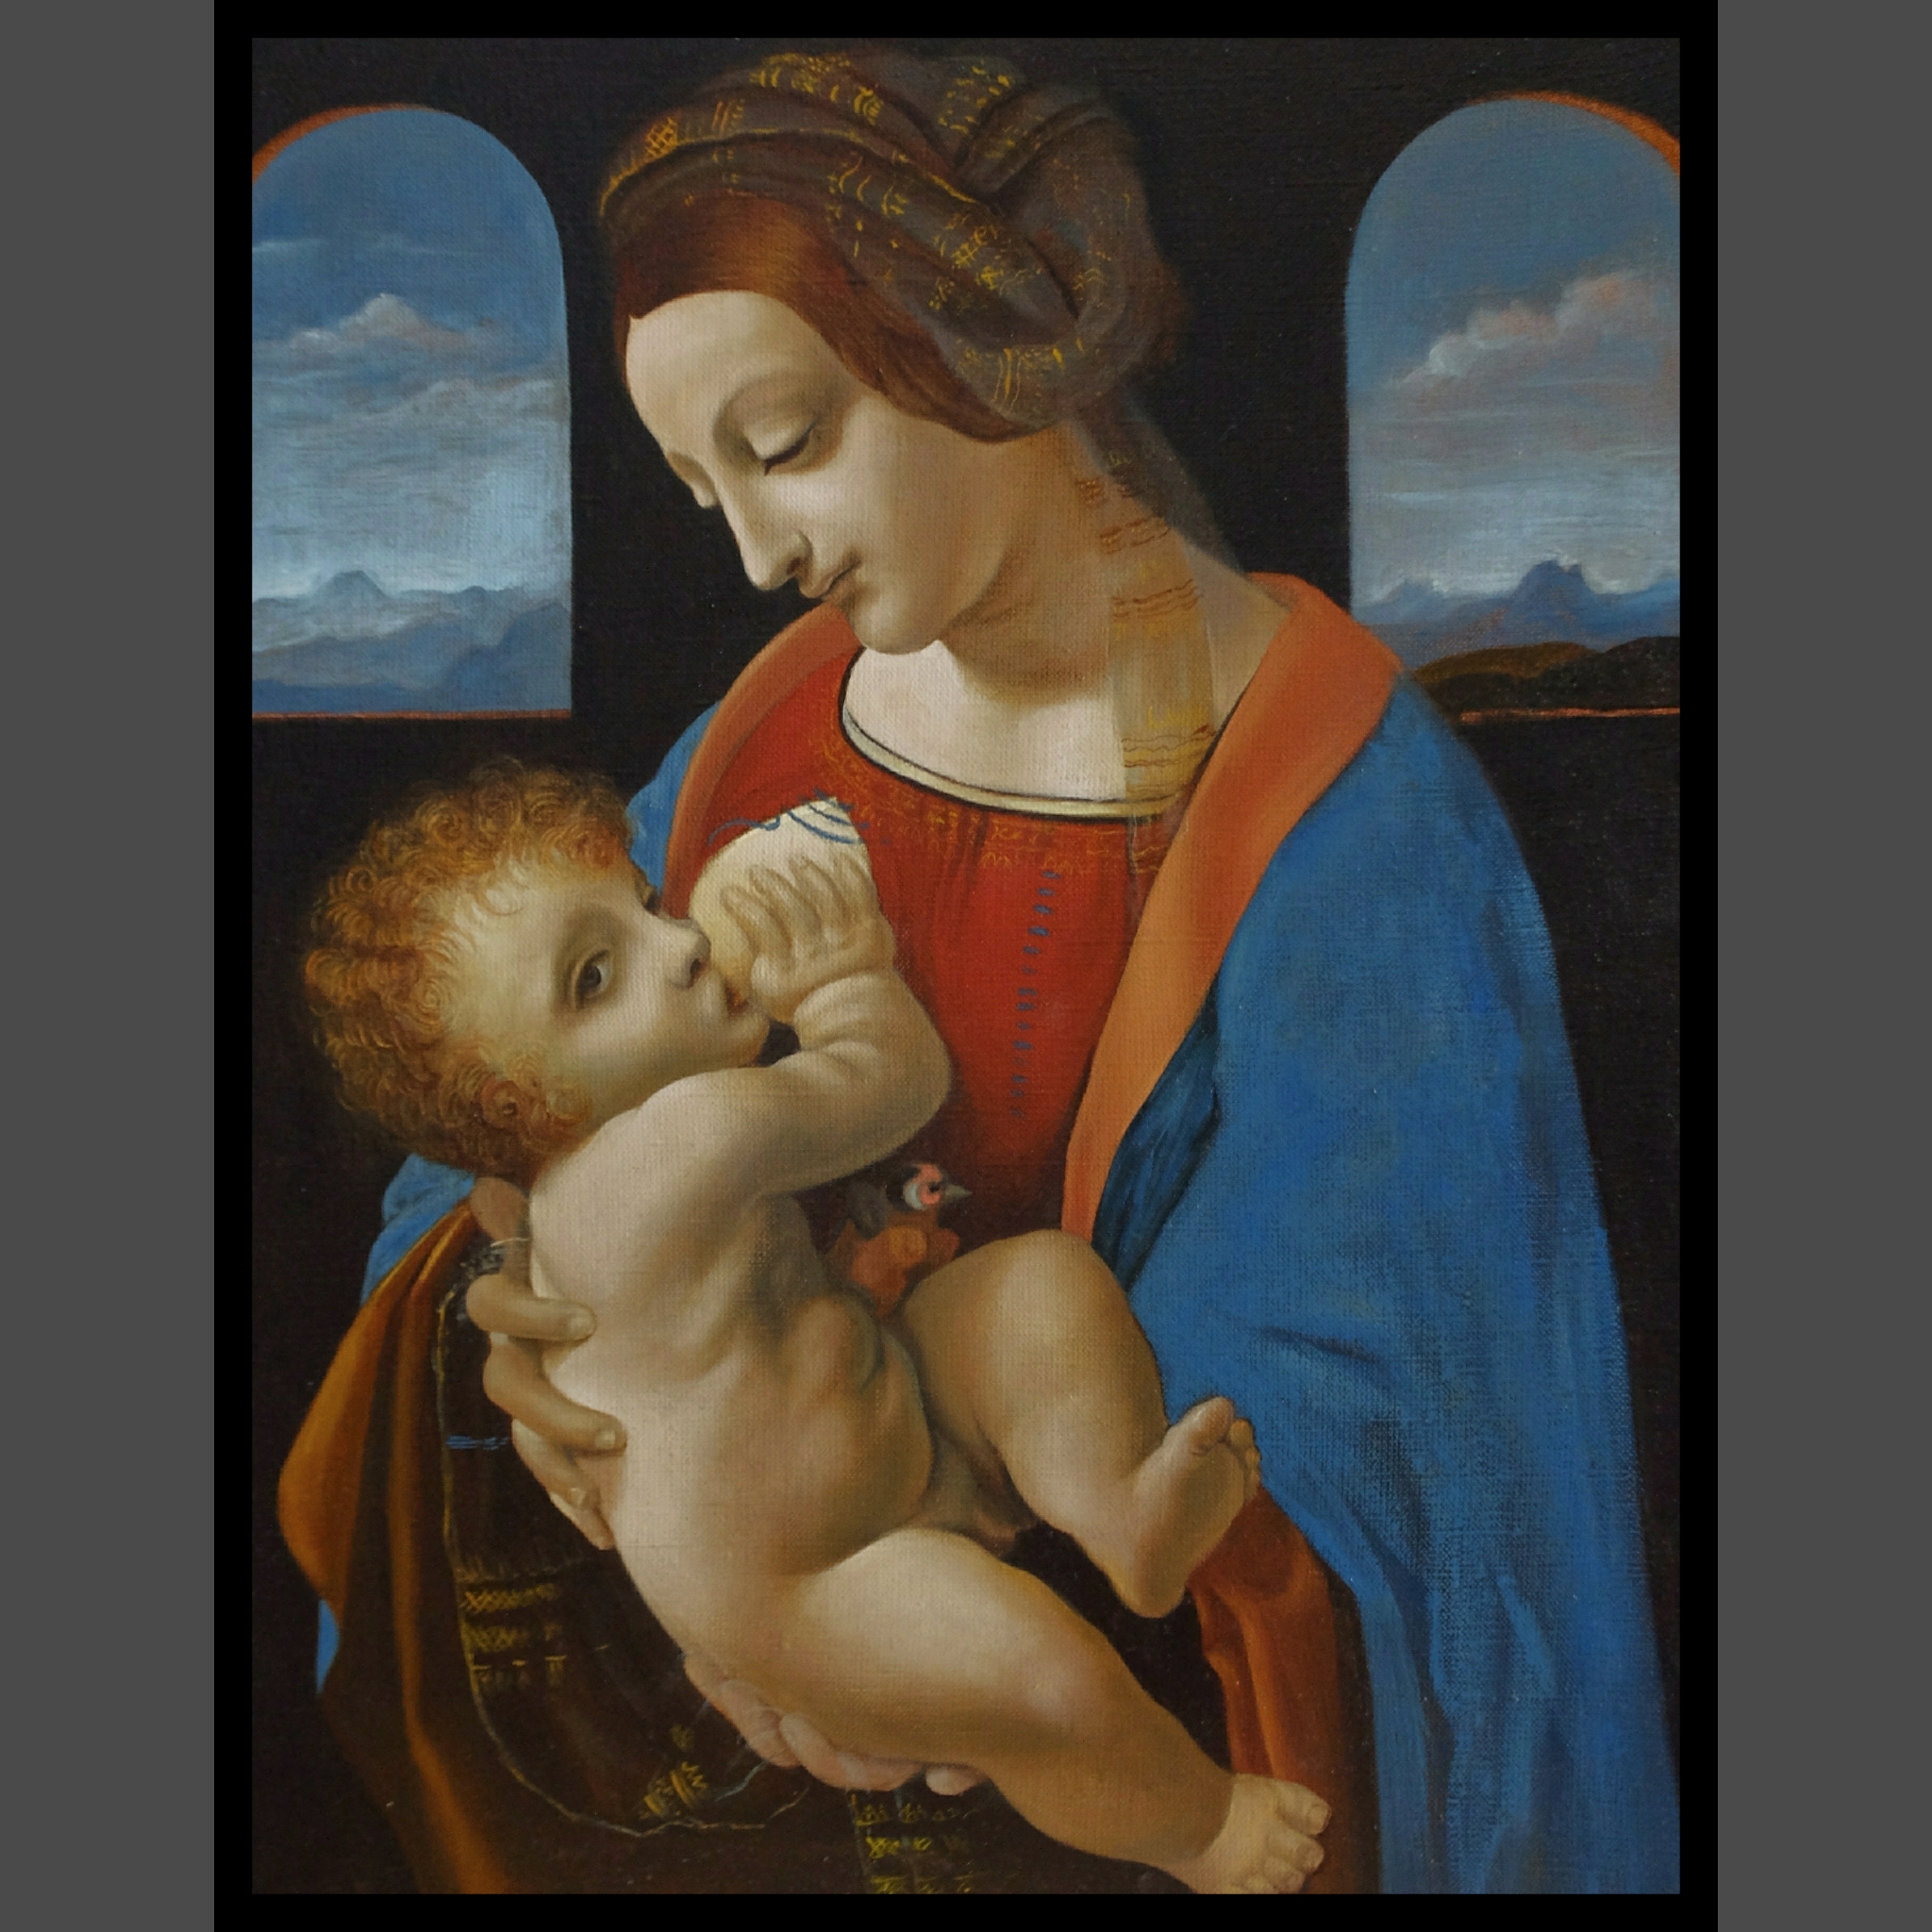 Мадонна Литта. Картина да Винчи Мадонна Литта. Мадонна с младенцем Леонардо да Винчи. Леонардо да Винчи «Мадонна с младенцем» («Мадонна Литта») (1490).